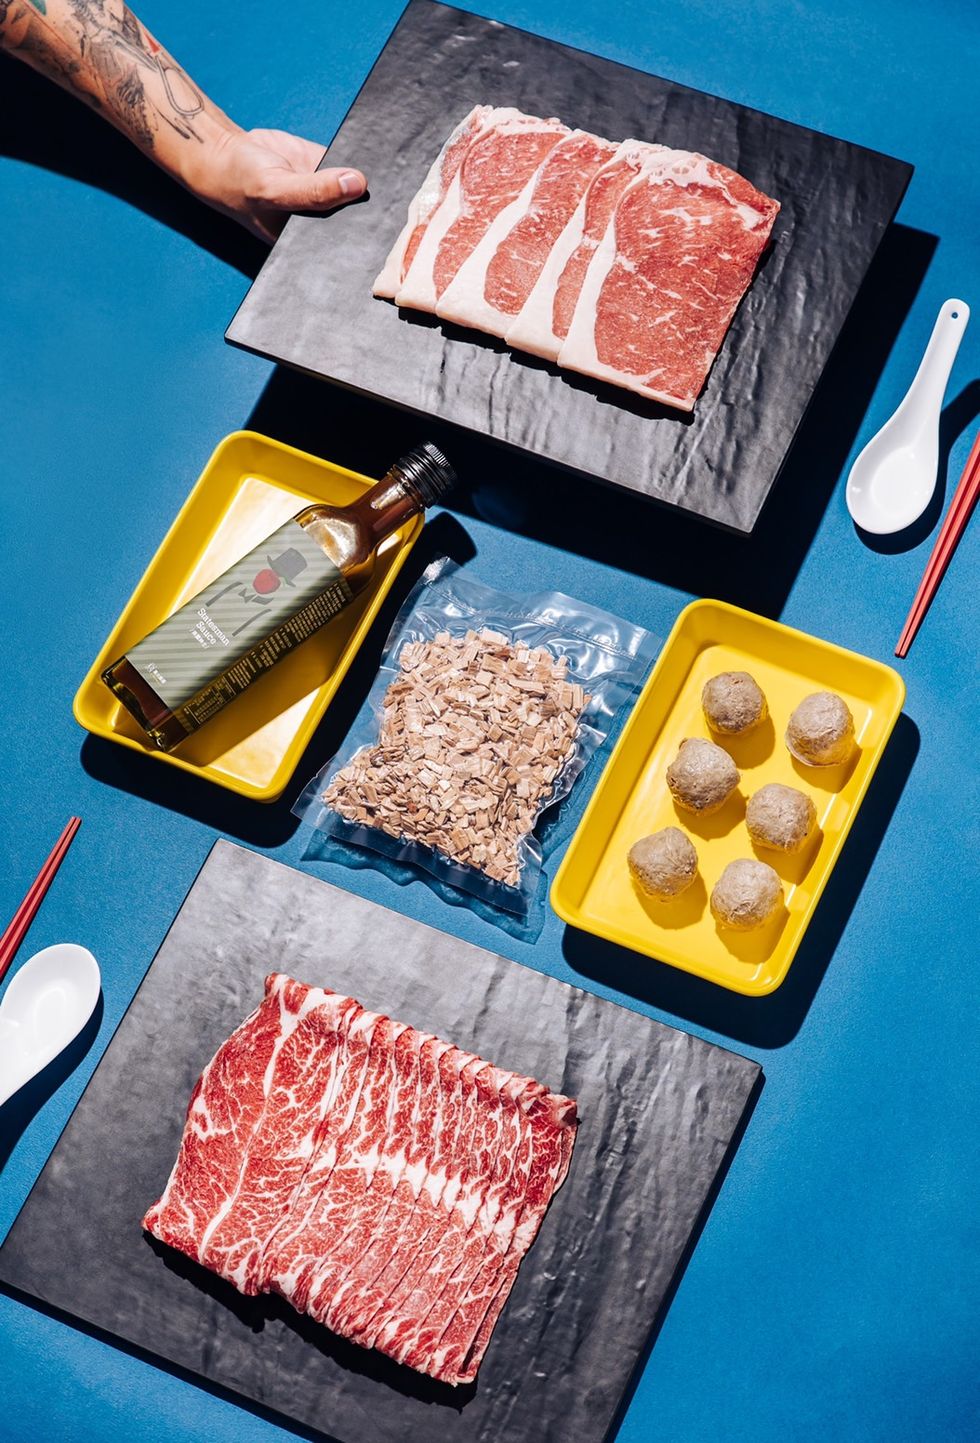 「肉到家」美食箱集結人氣美食名店推出酸菜白肉鍋、bbq燒烤組